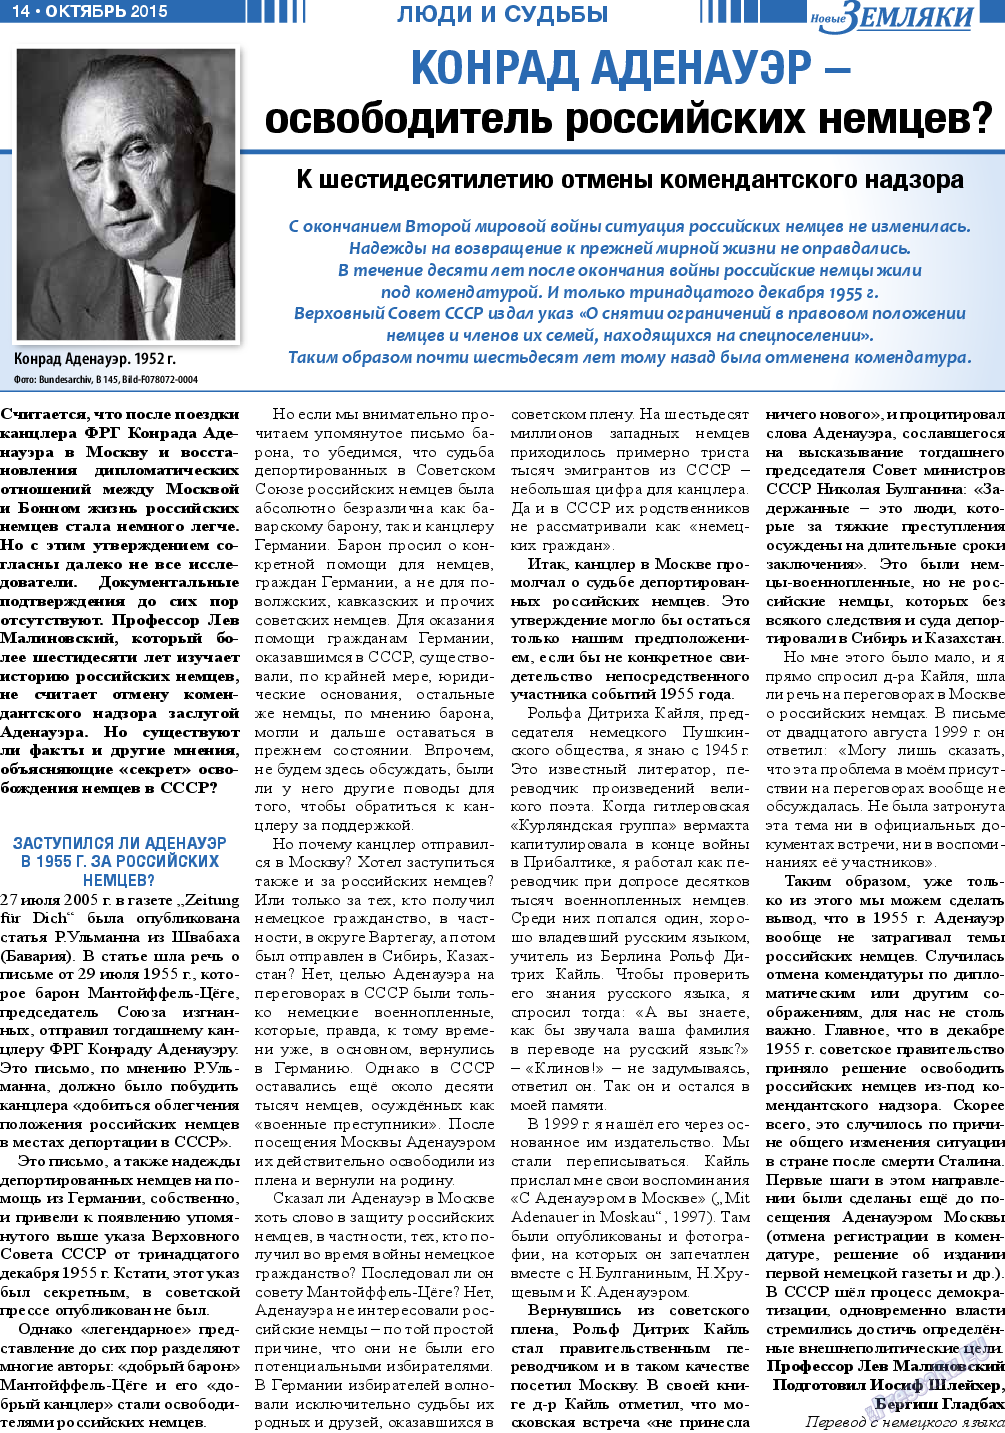 Новые Земляки, газета. 2015 №10 стр.14